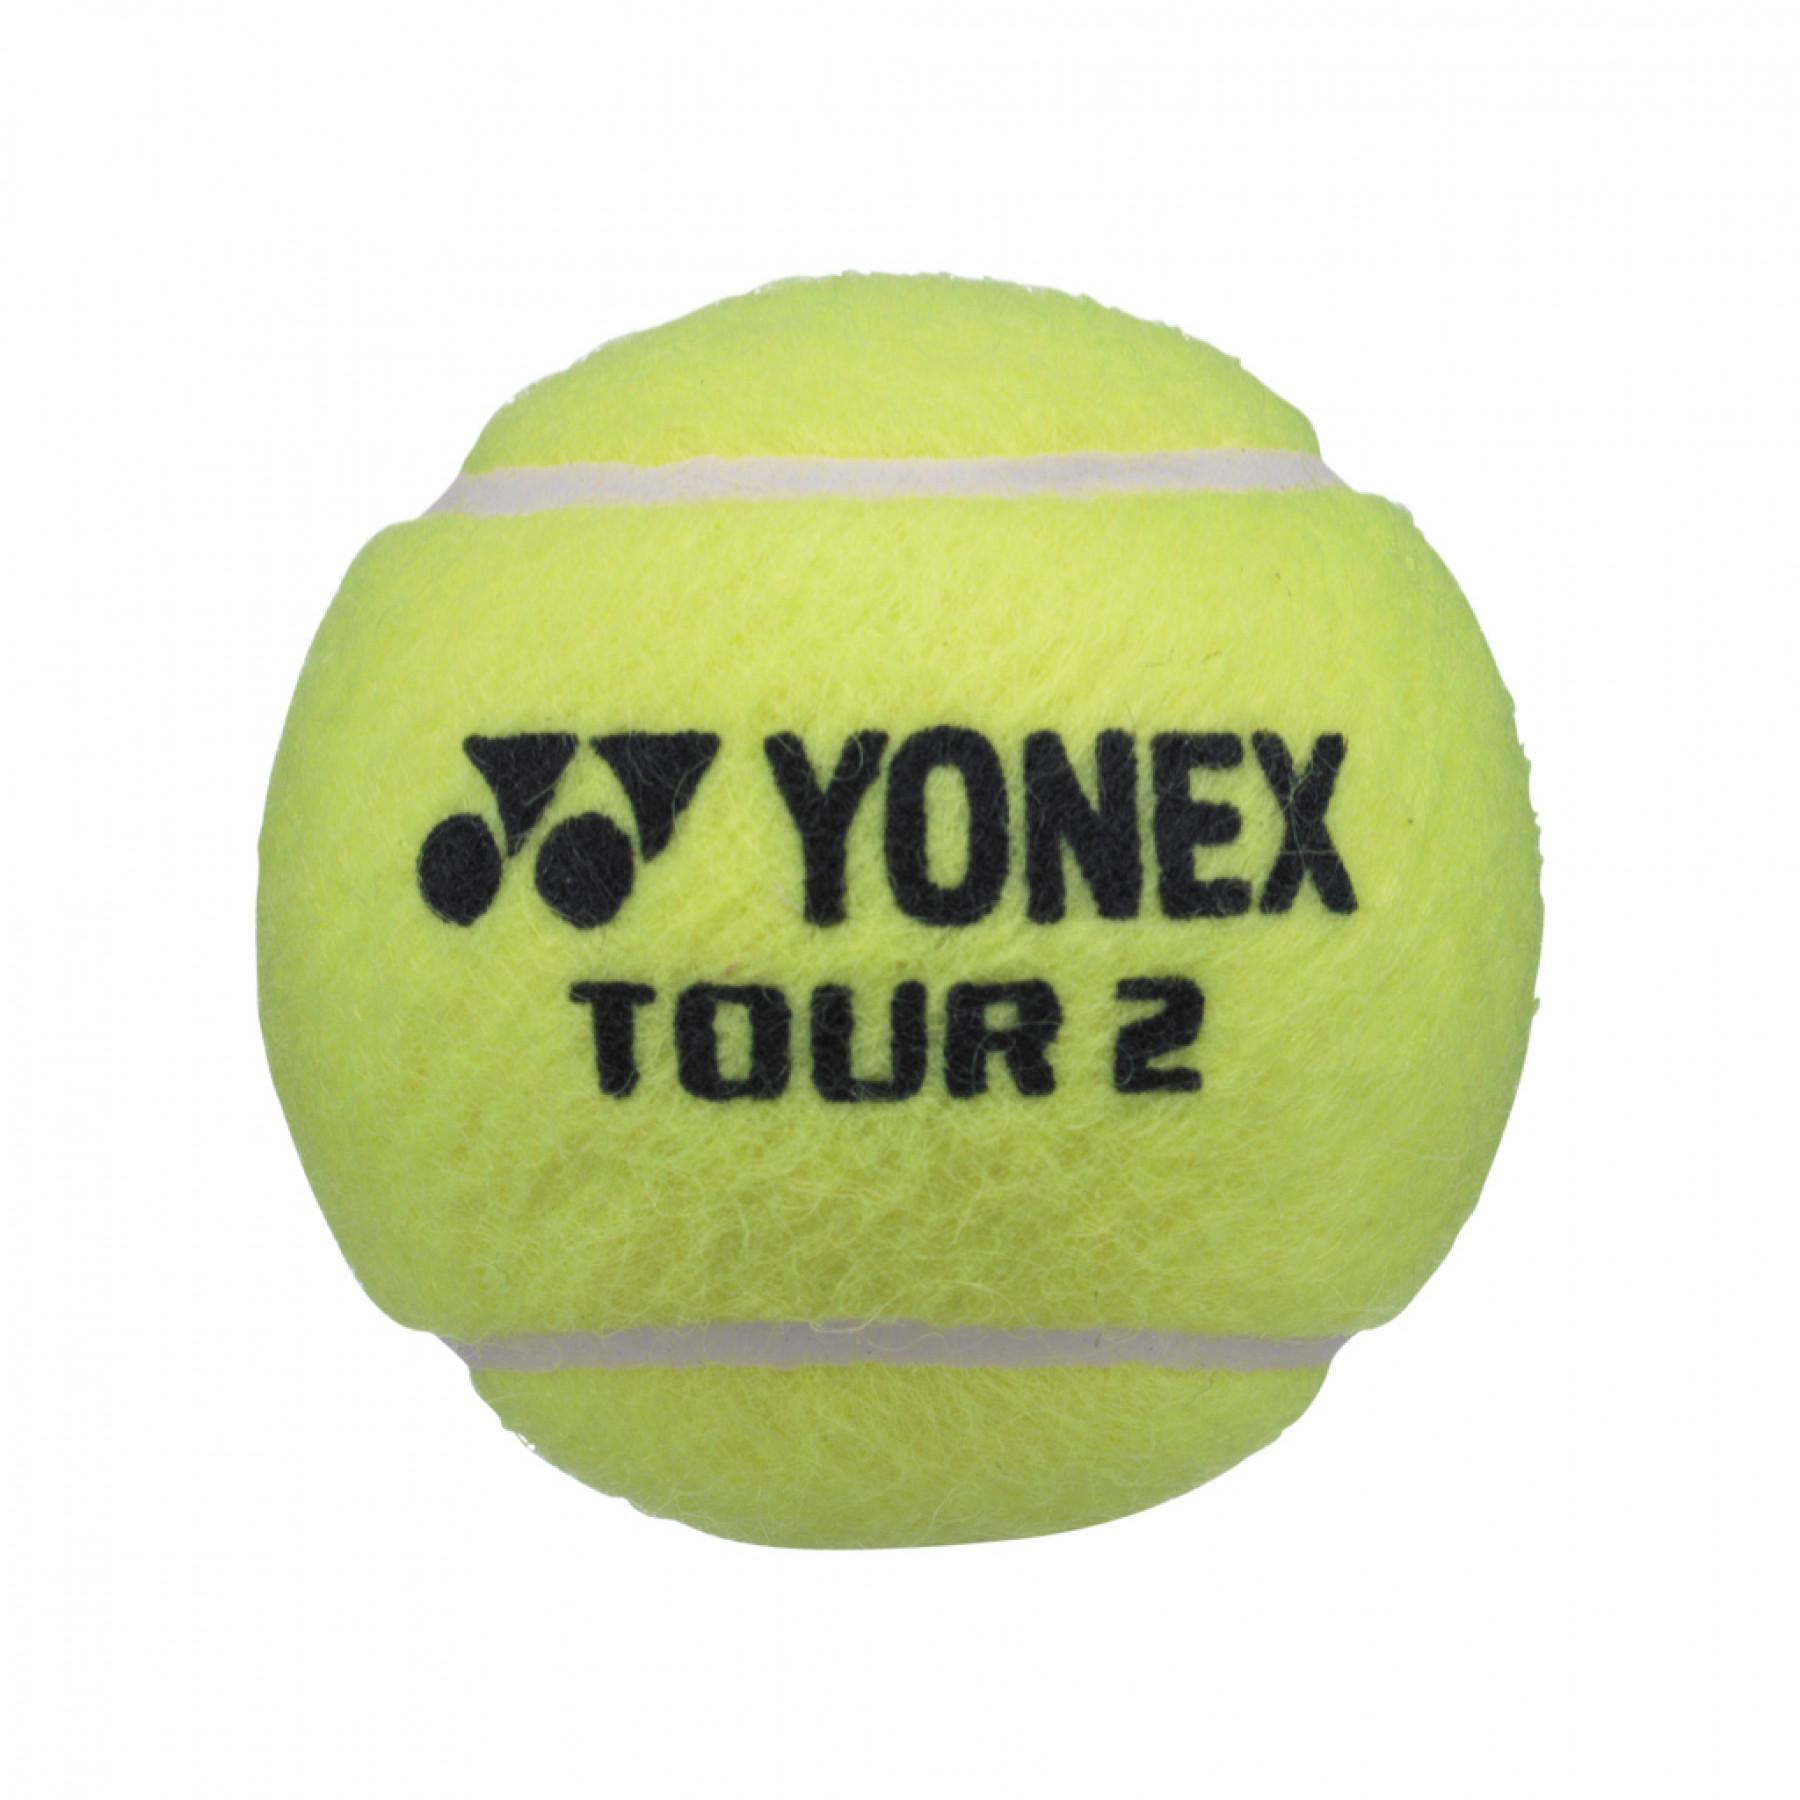 Tubo de 4 pelotas Yonex Tour